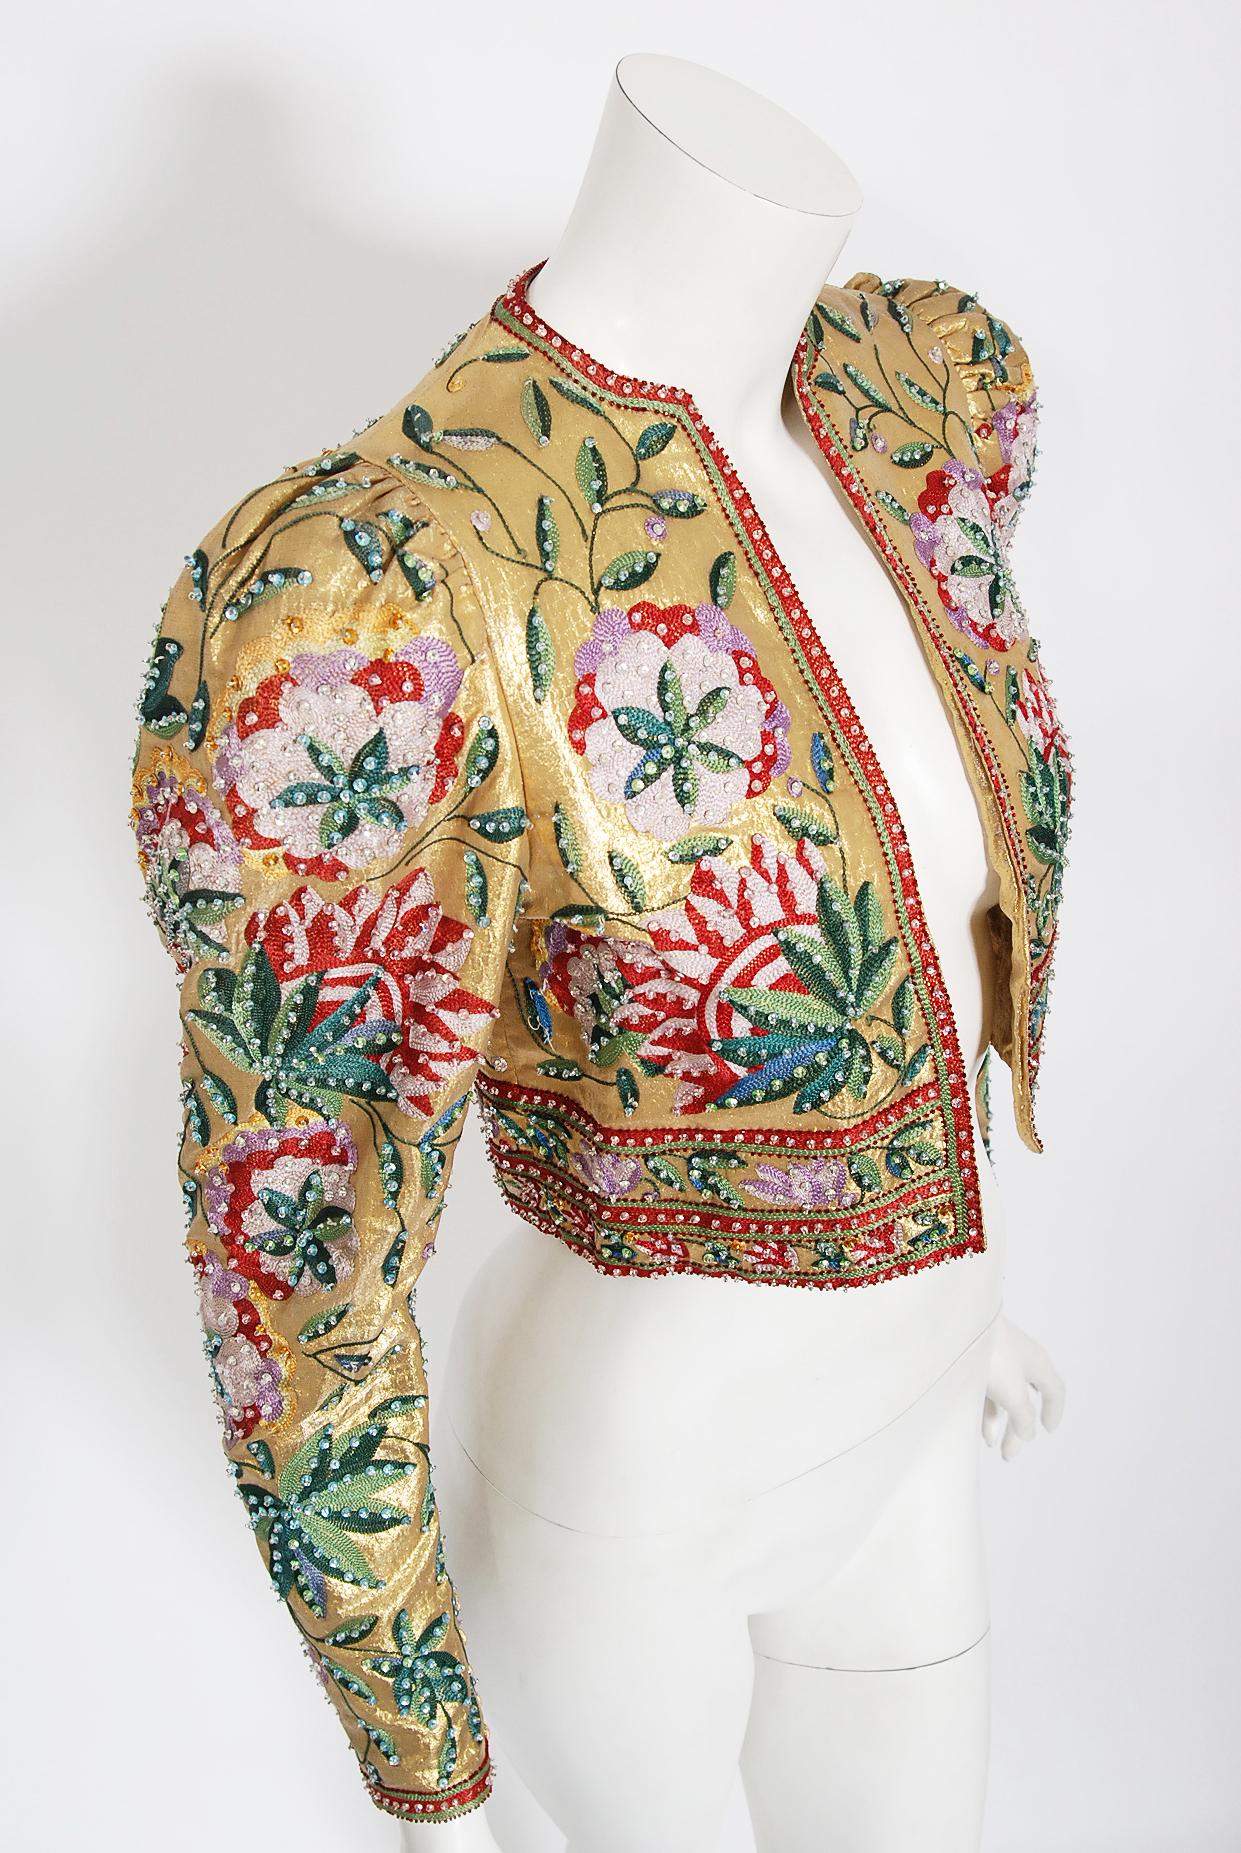 Très belle veste courte en lamé métallique or de Lanvin Haute Couture datant de la fin des années 1970. Le tissu lui-même est un chef-d'œuvre : un lamé doré étincelant à motifs de peau de serpent, somptueusement brodé de fleurs et de vignobles